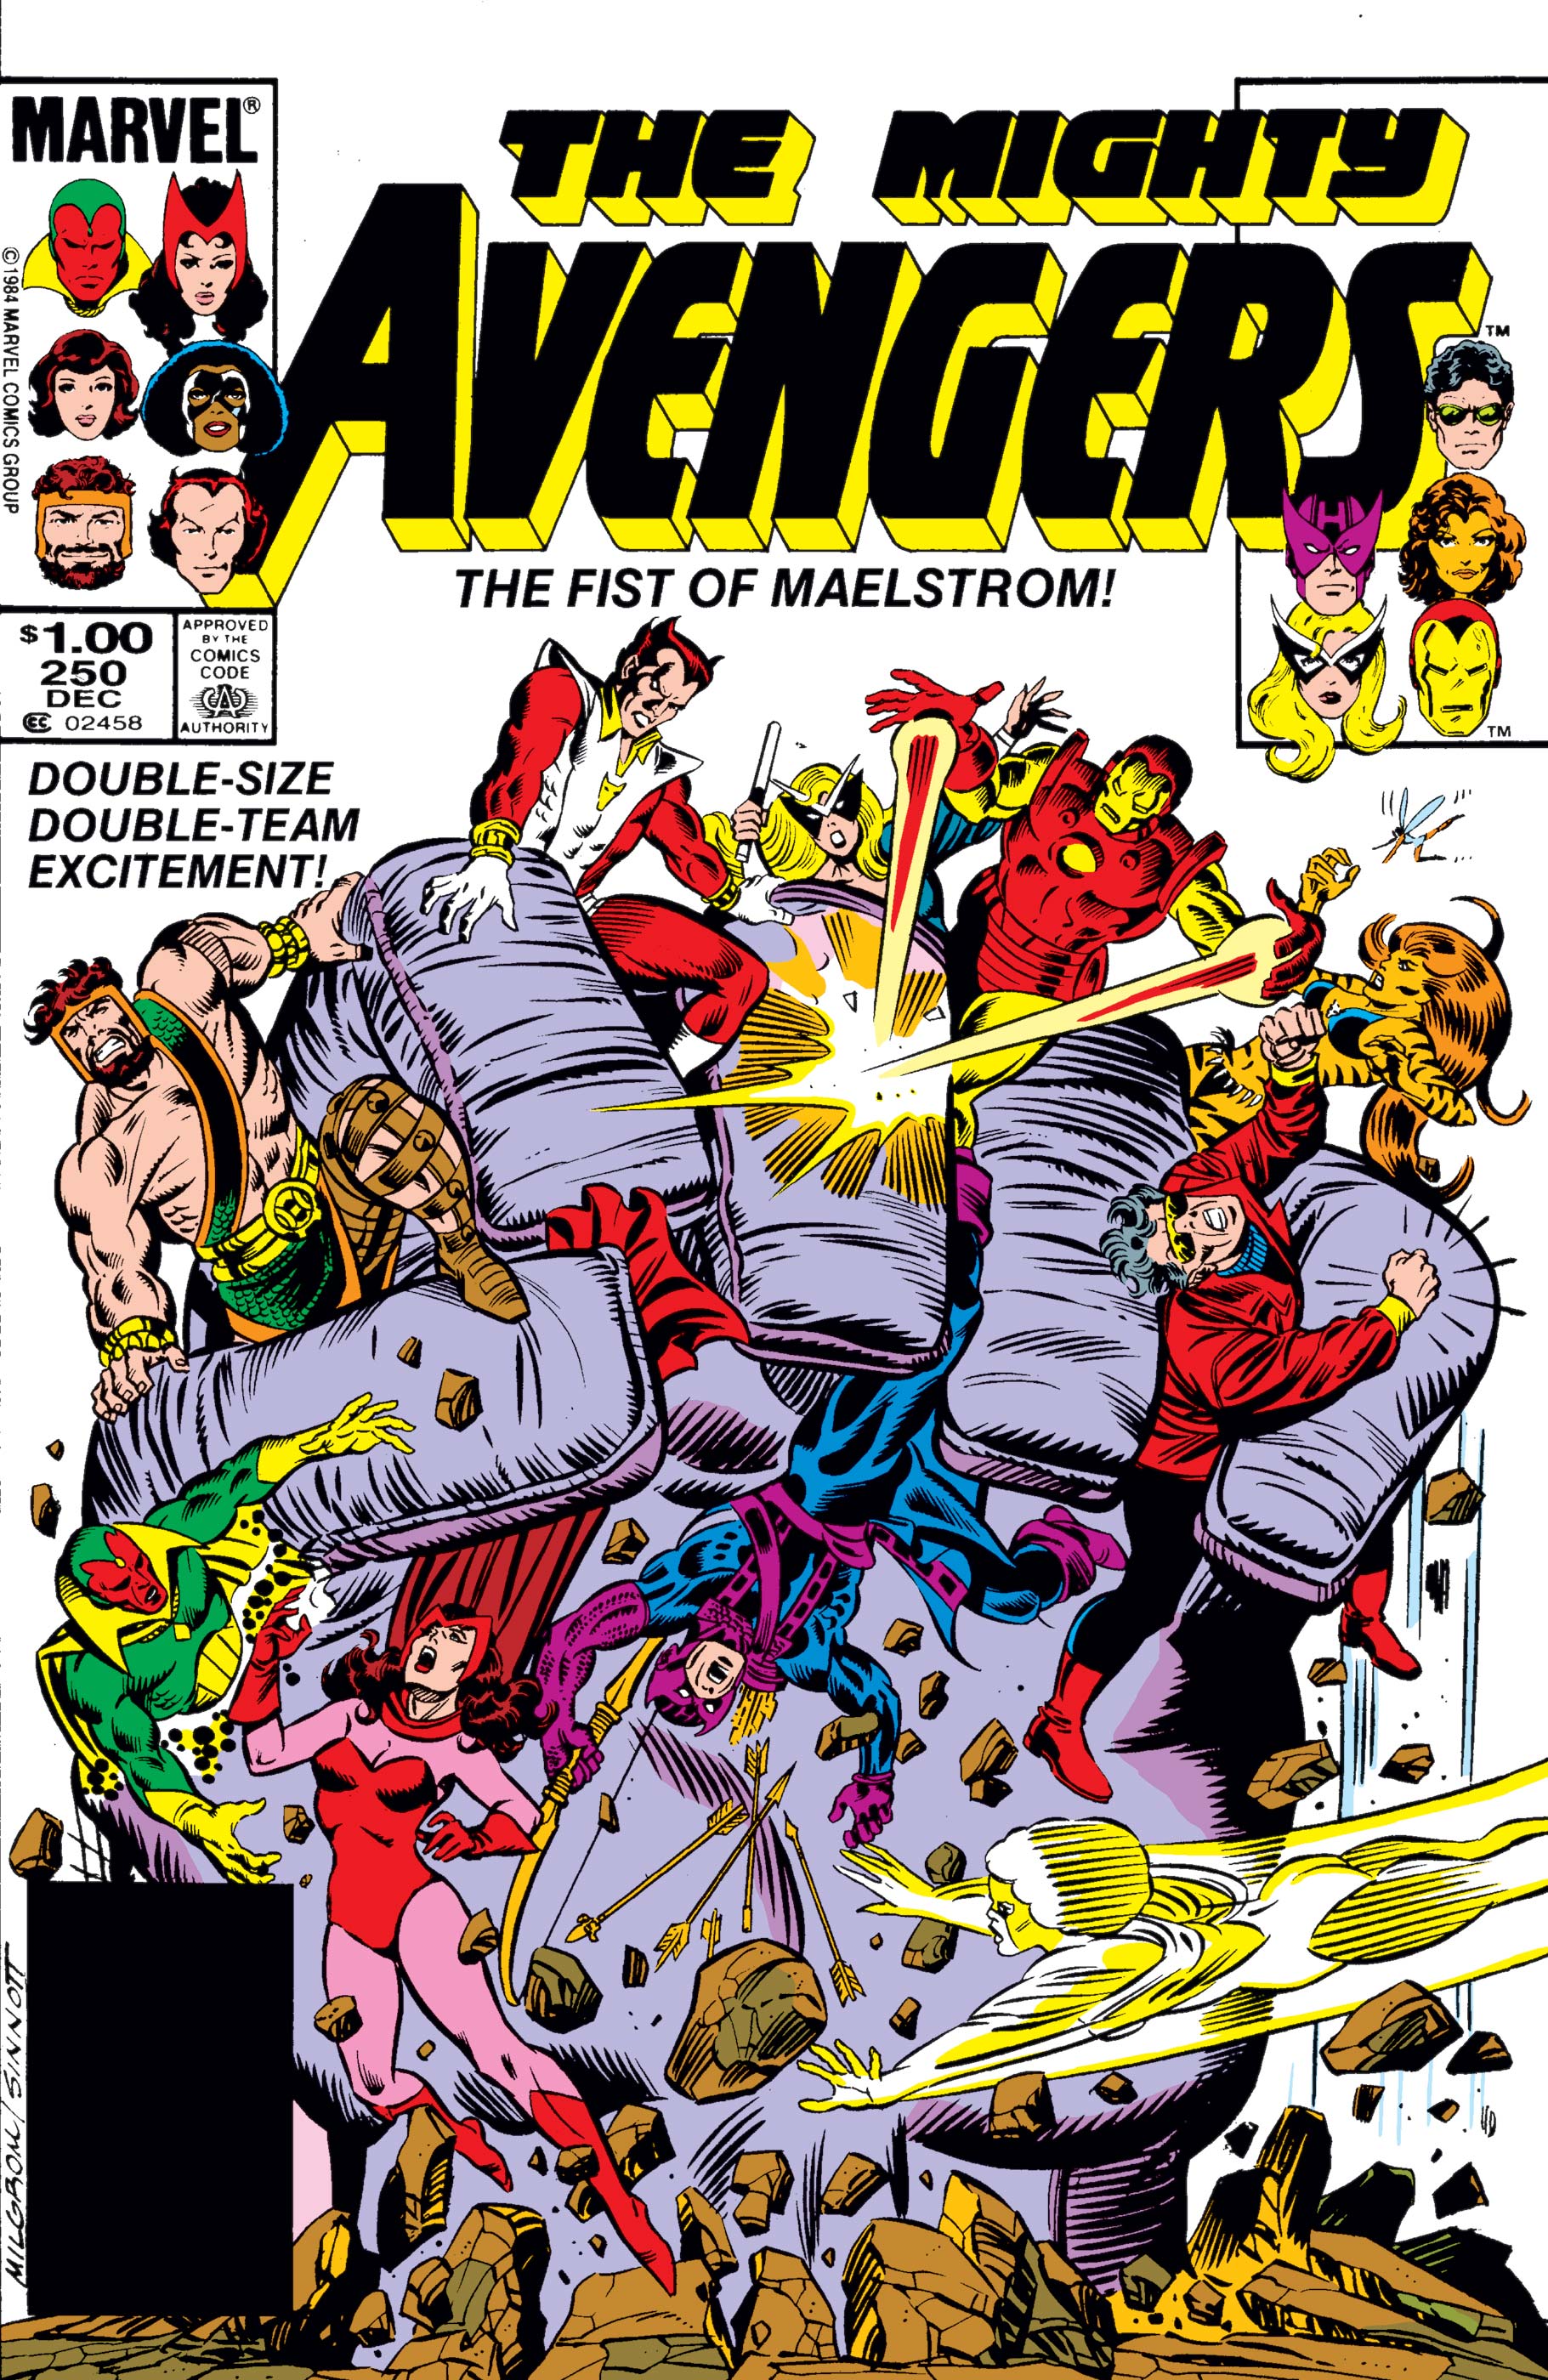 Avengers (1963) #250